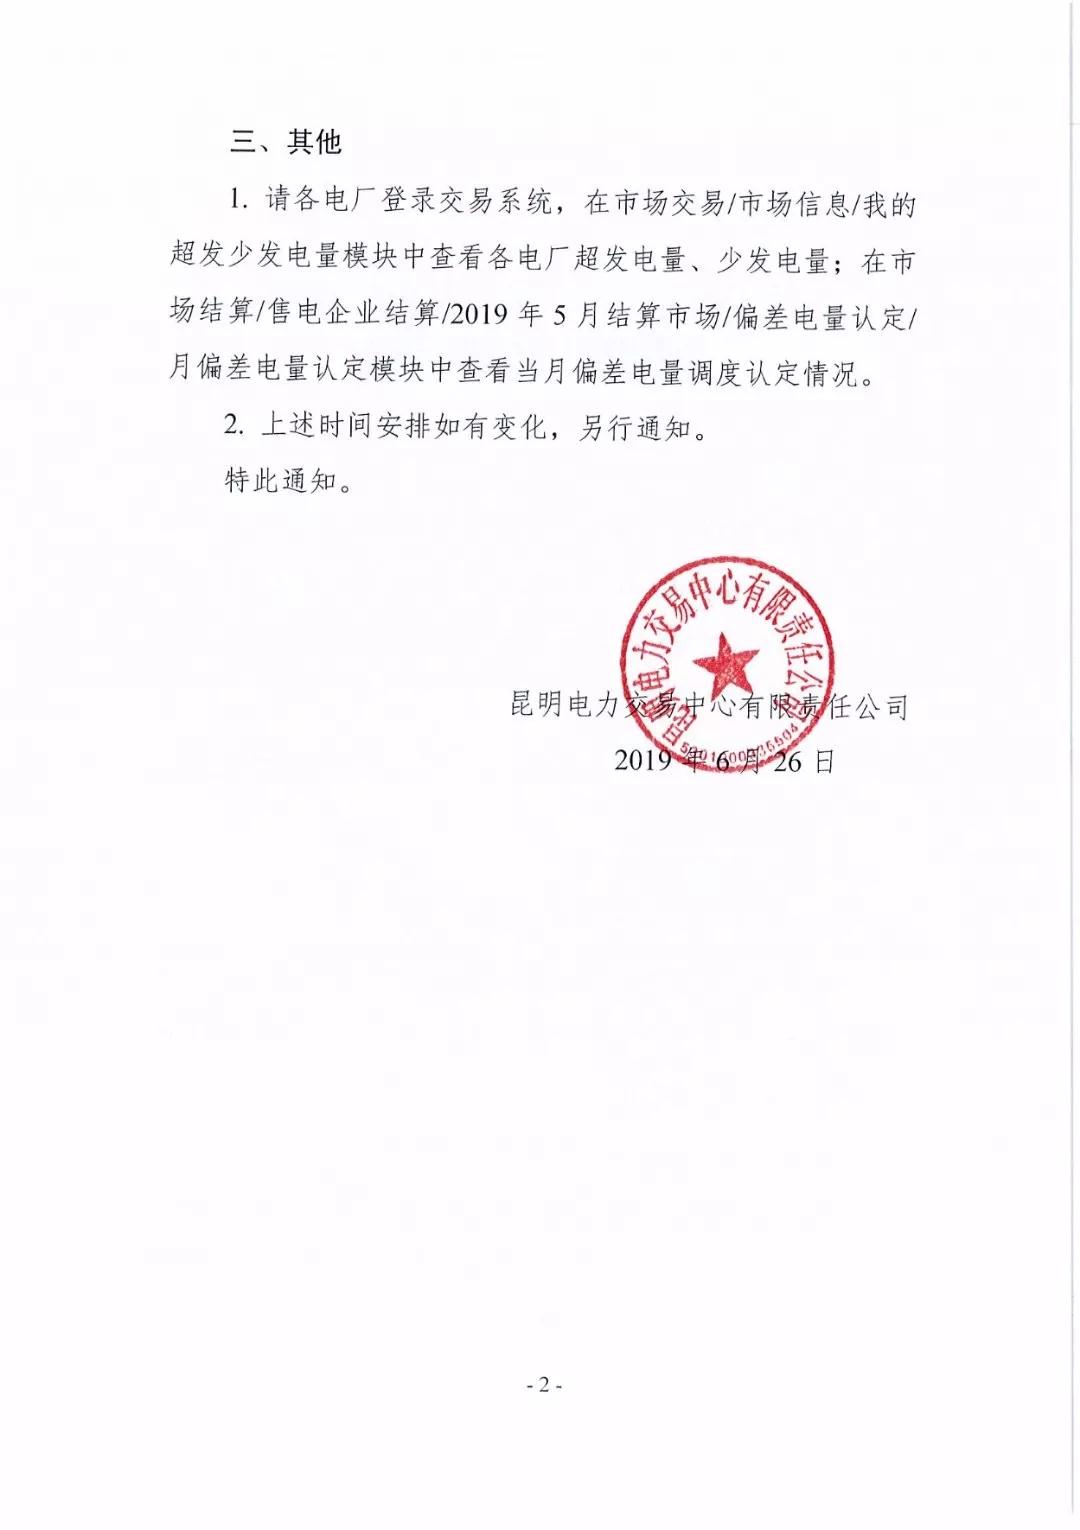 云南2019年5月电厂事后合约转让交易6月28日开展